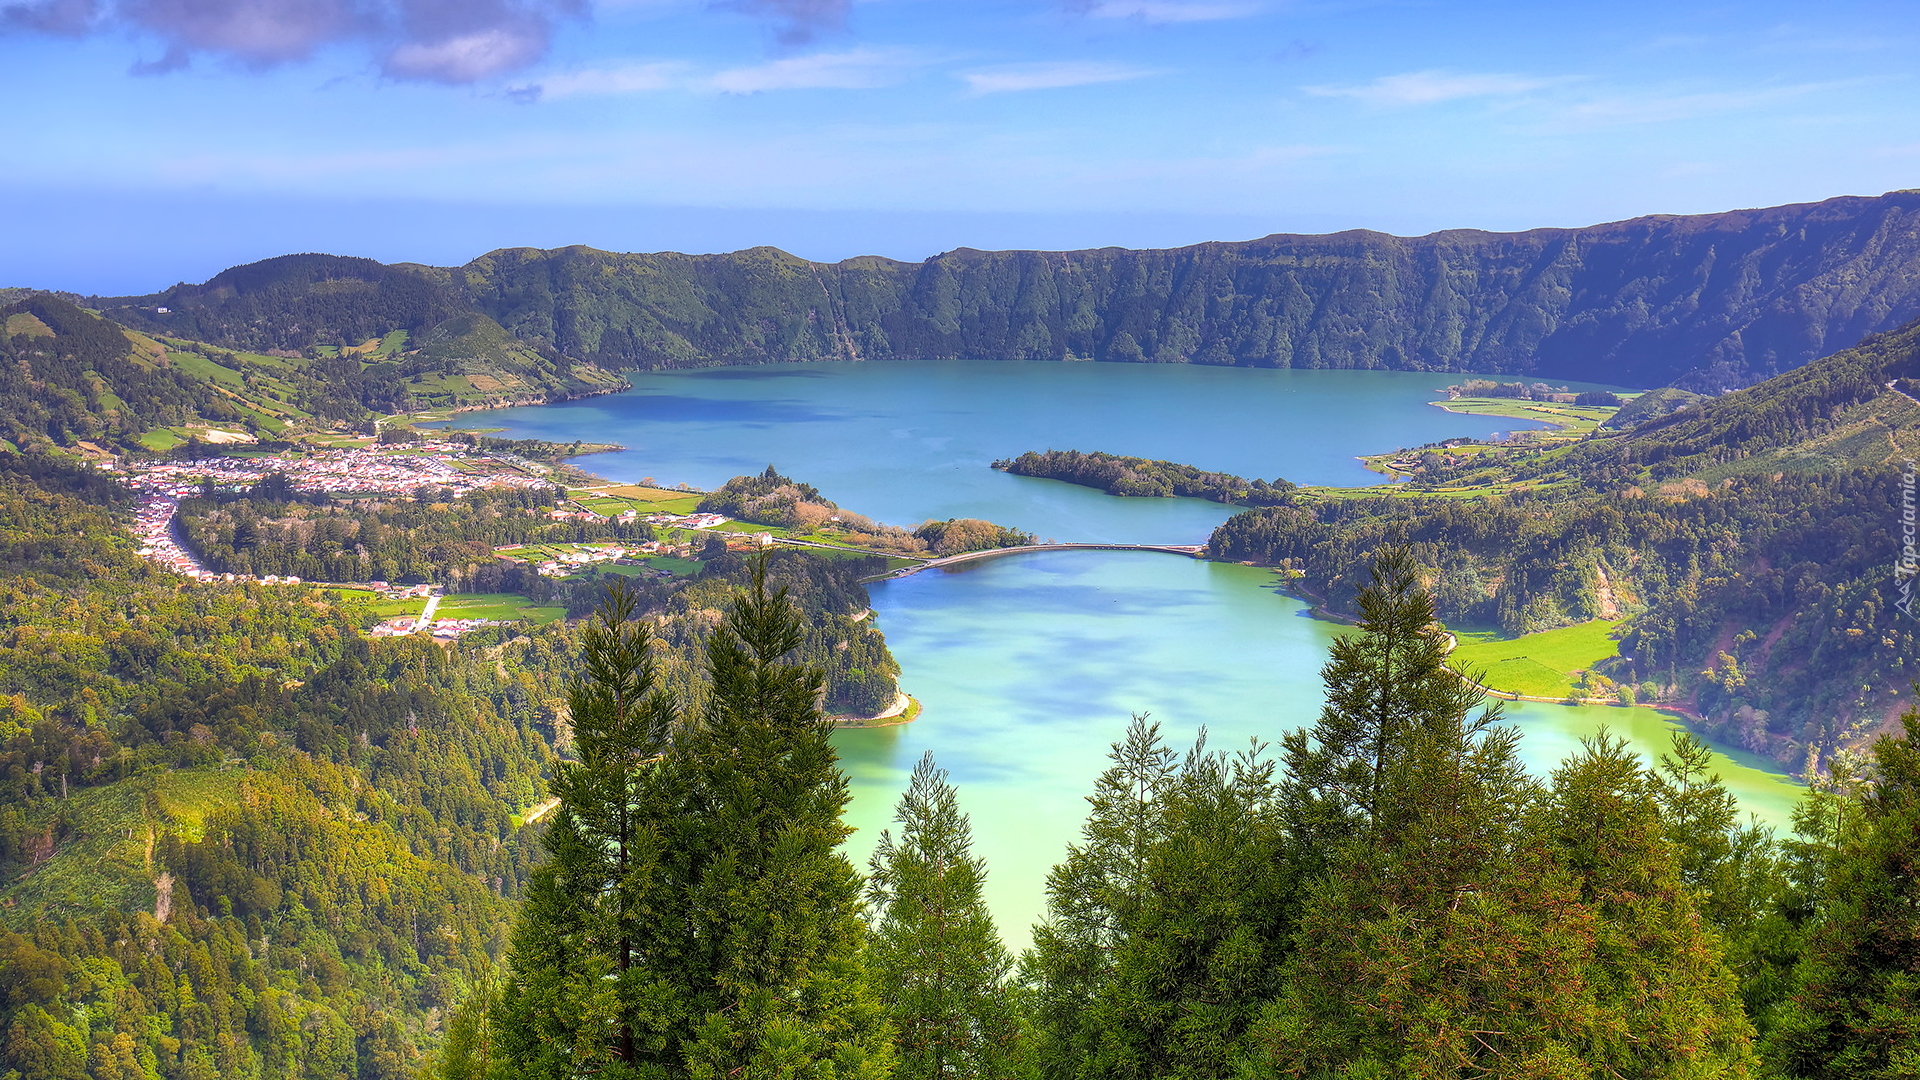 Jezioro Azul, Jezioro Verde, Wzgórza, Lasy, Drzewa, Obłoki, Miasto Ponta Delgada, Sete Cidades, Wyspa Sao Miguel, Azory, Portugalia